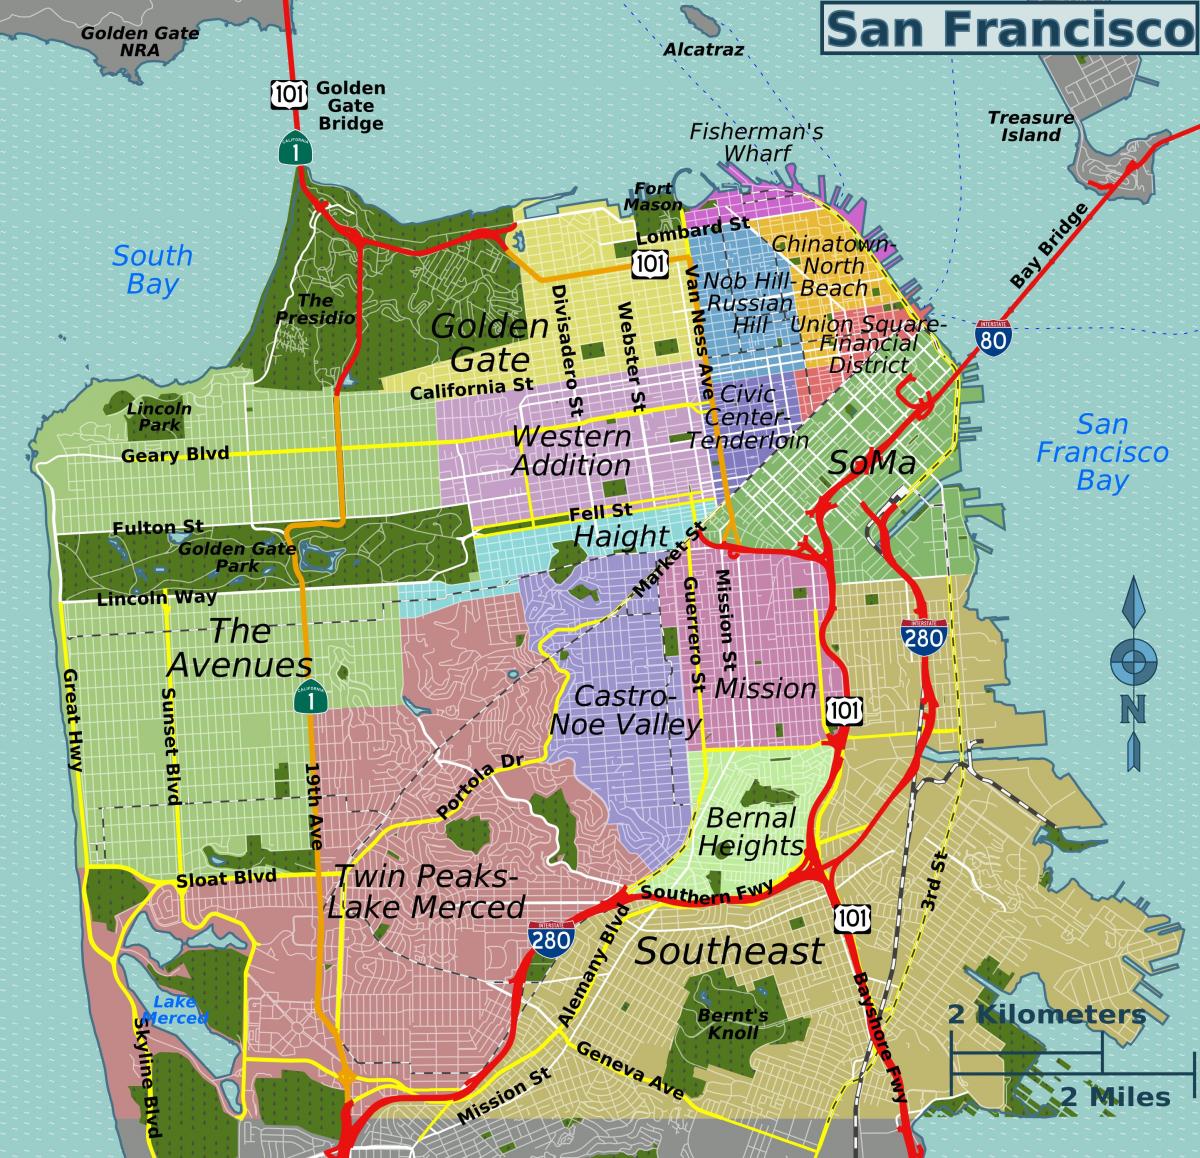 Mappa del quartiere di San Francisco